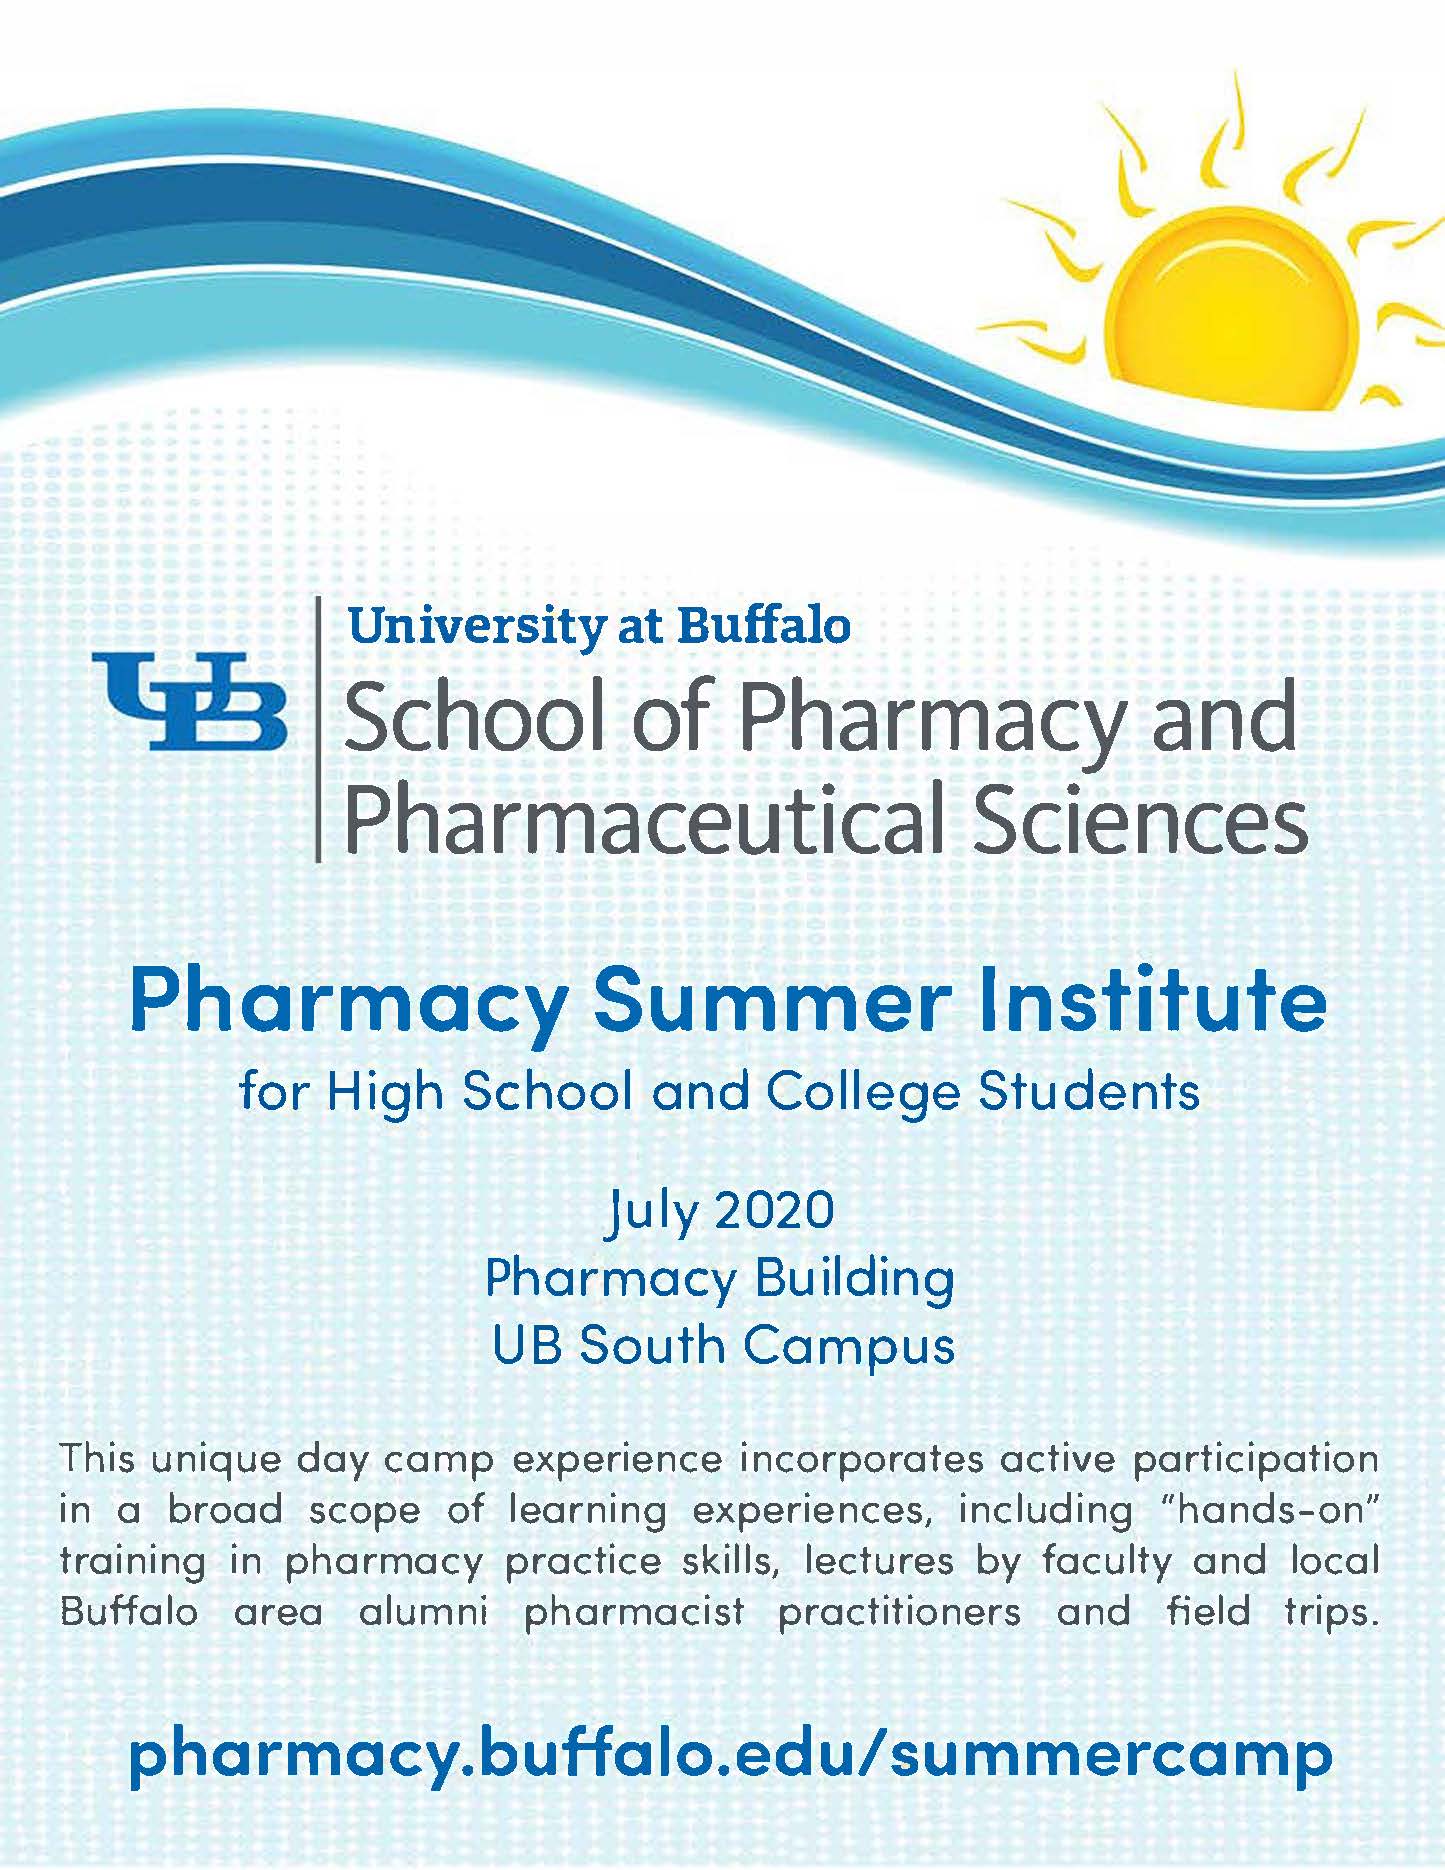 UB Summer Camp 2020 Pharmacy for me